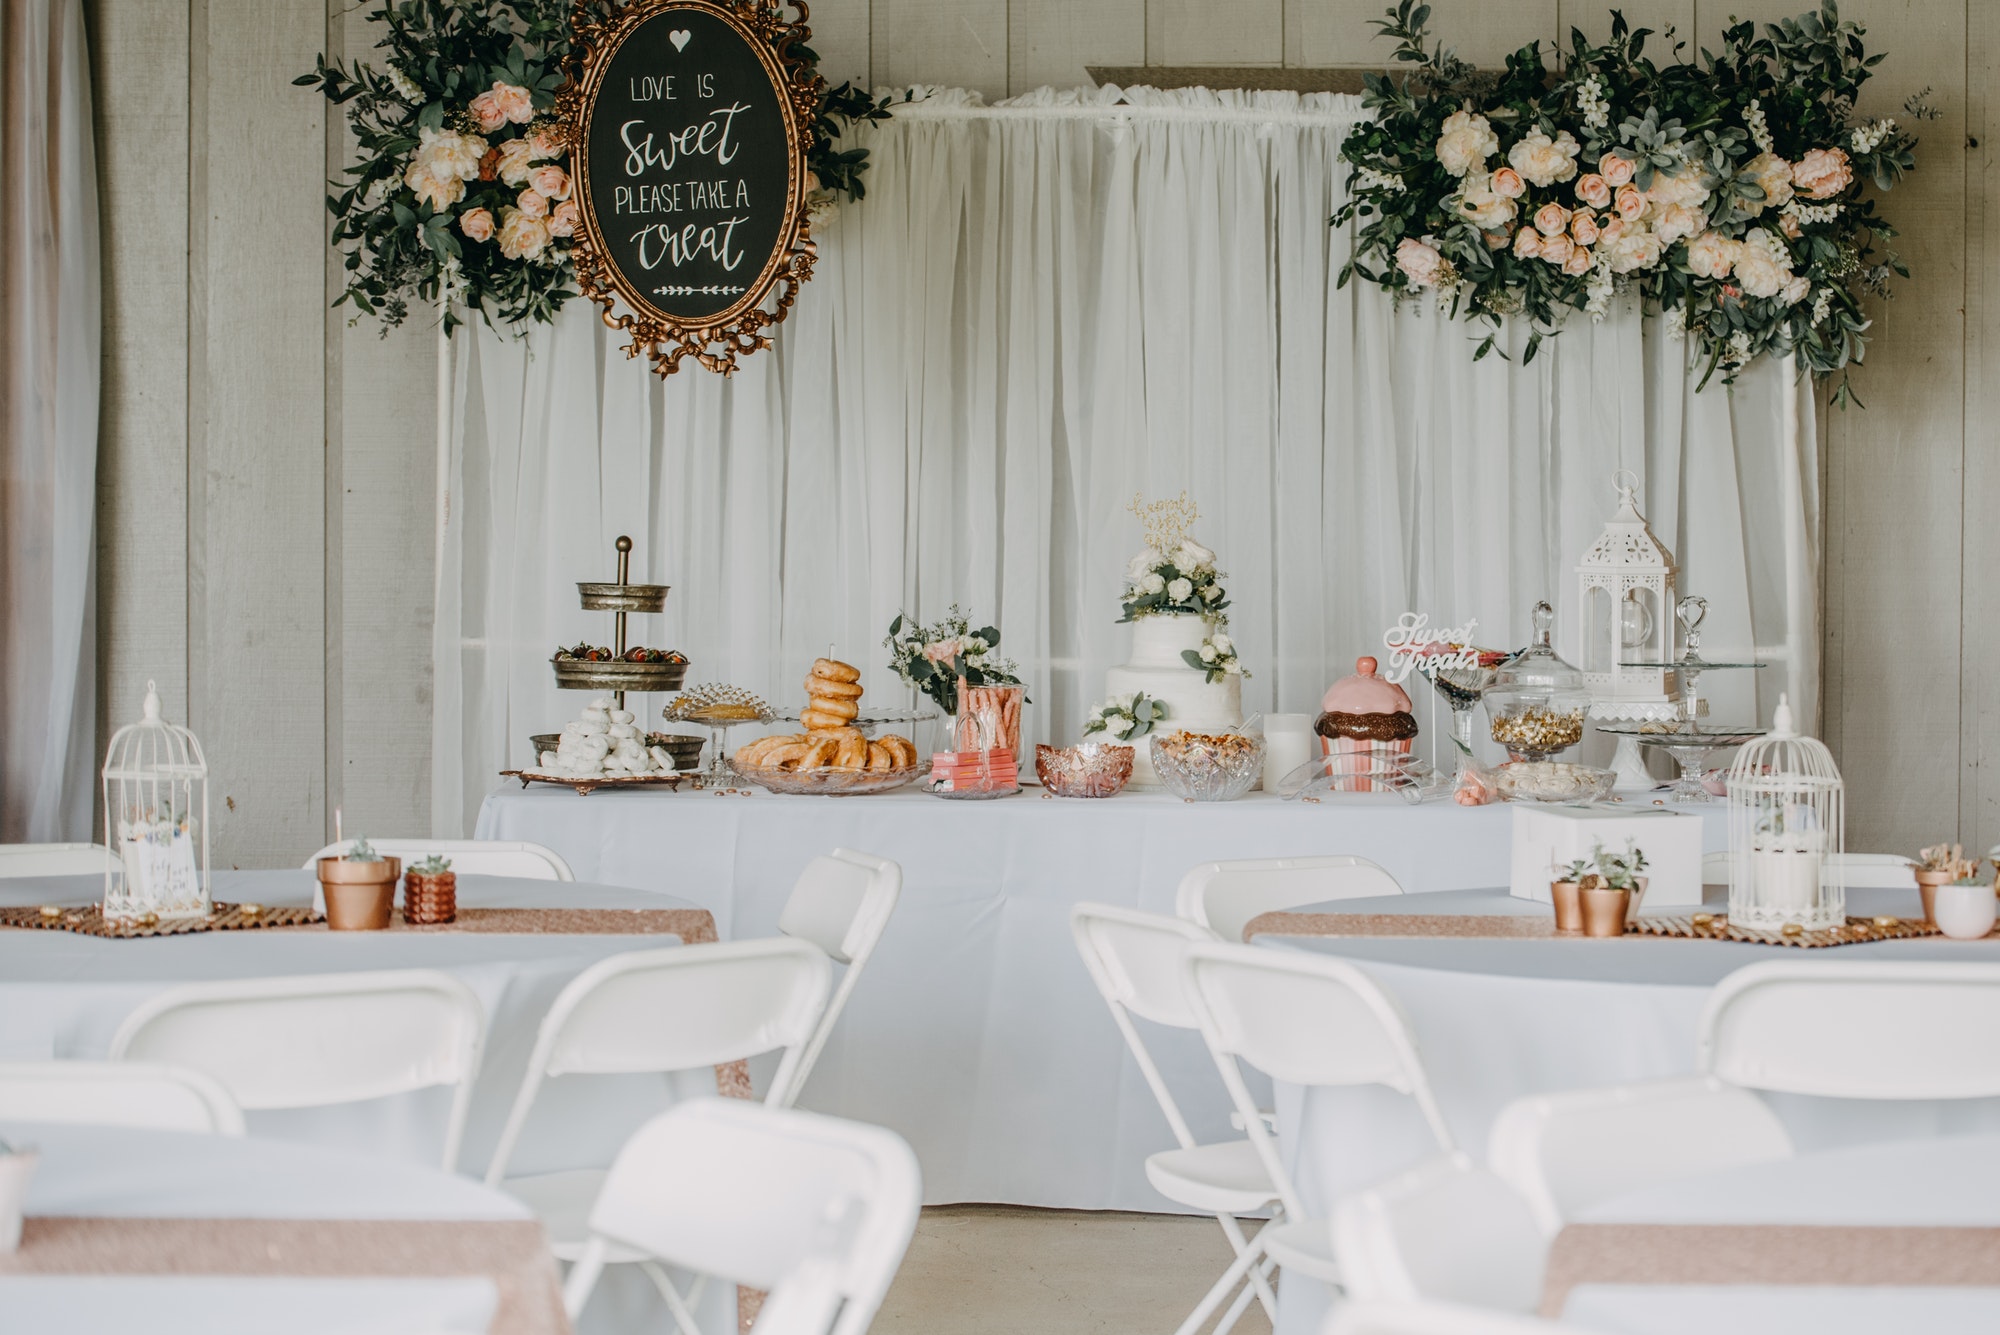 Barn wedding details